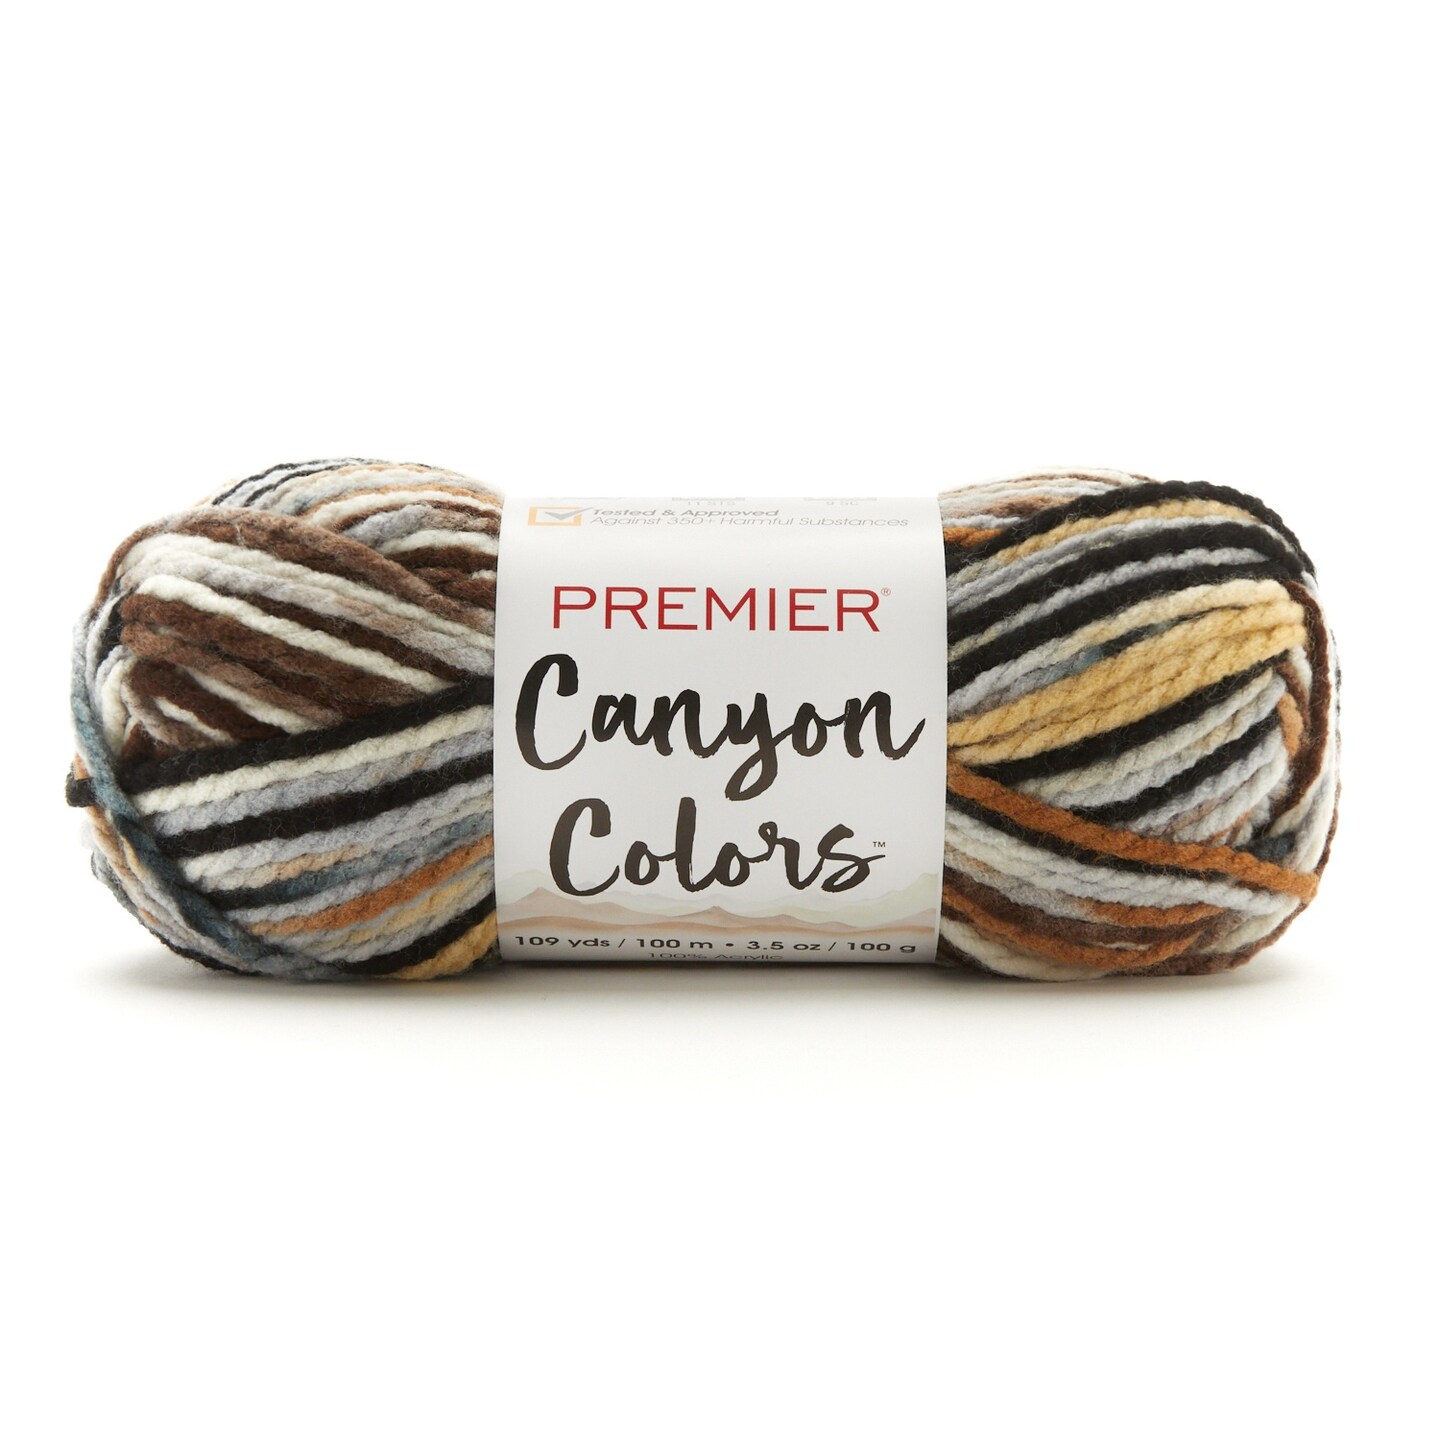 Premier Canyon Colors-Antique